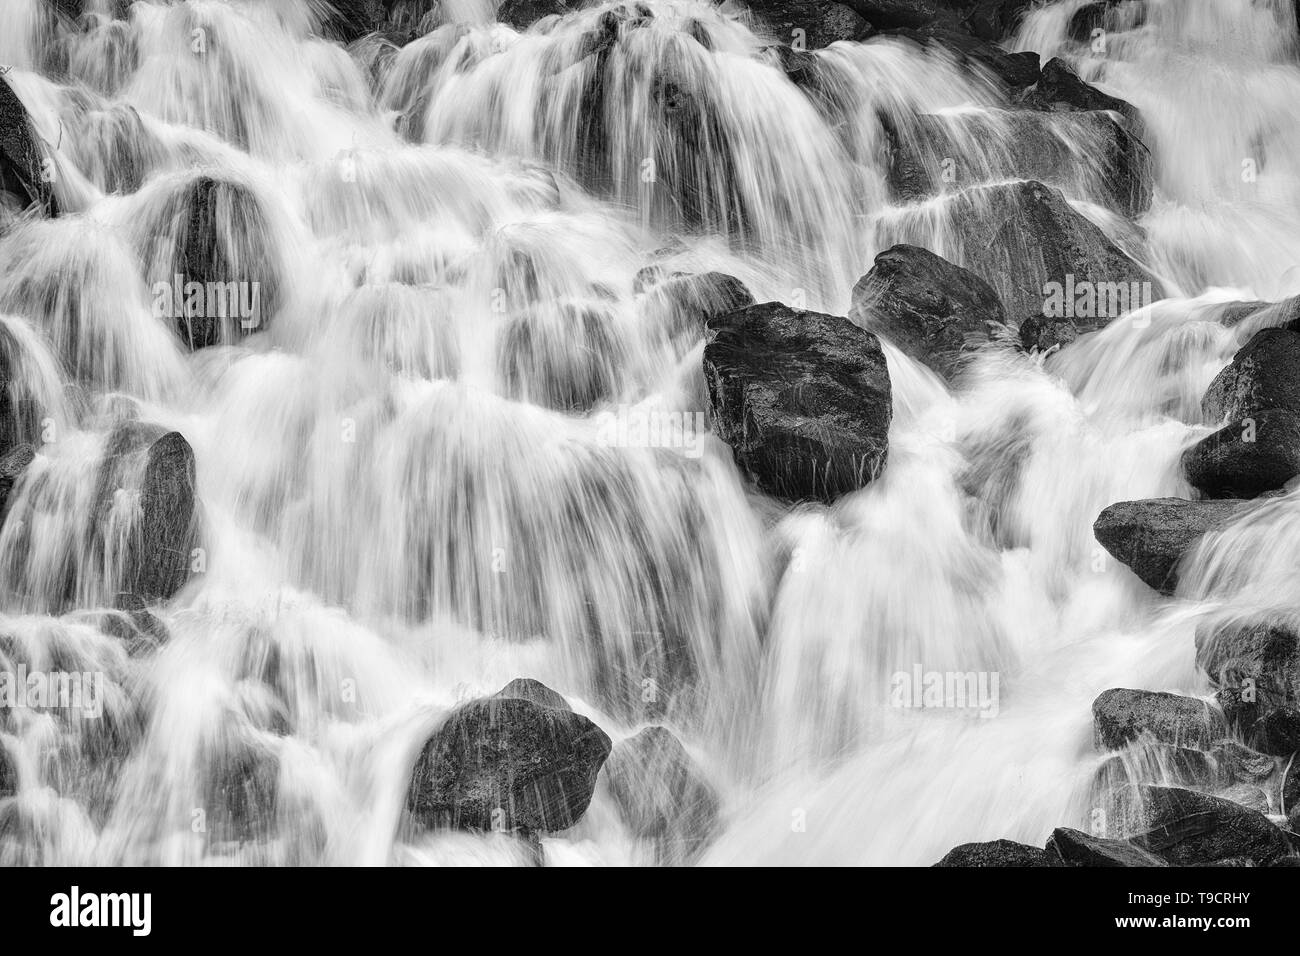 Dettaglio della cascata Pemberton della Columbia britannica in Canada Foto Stock